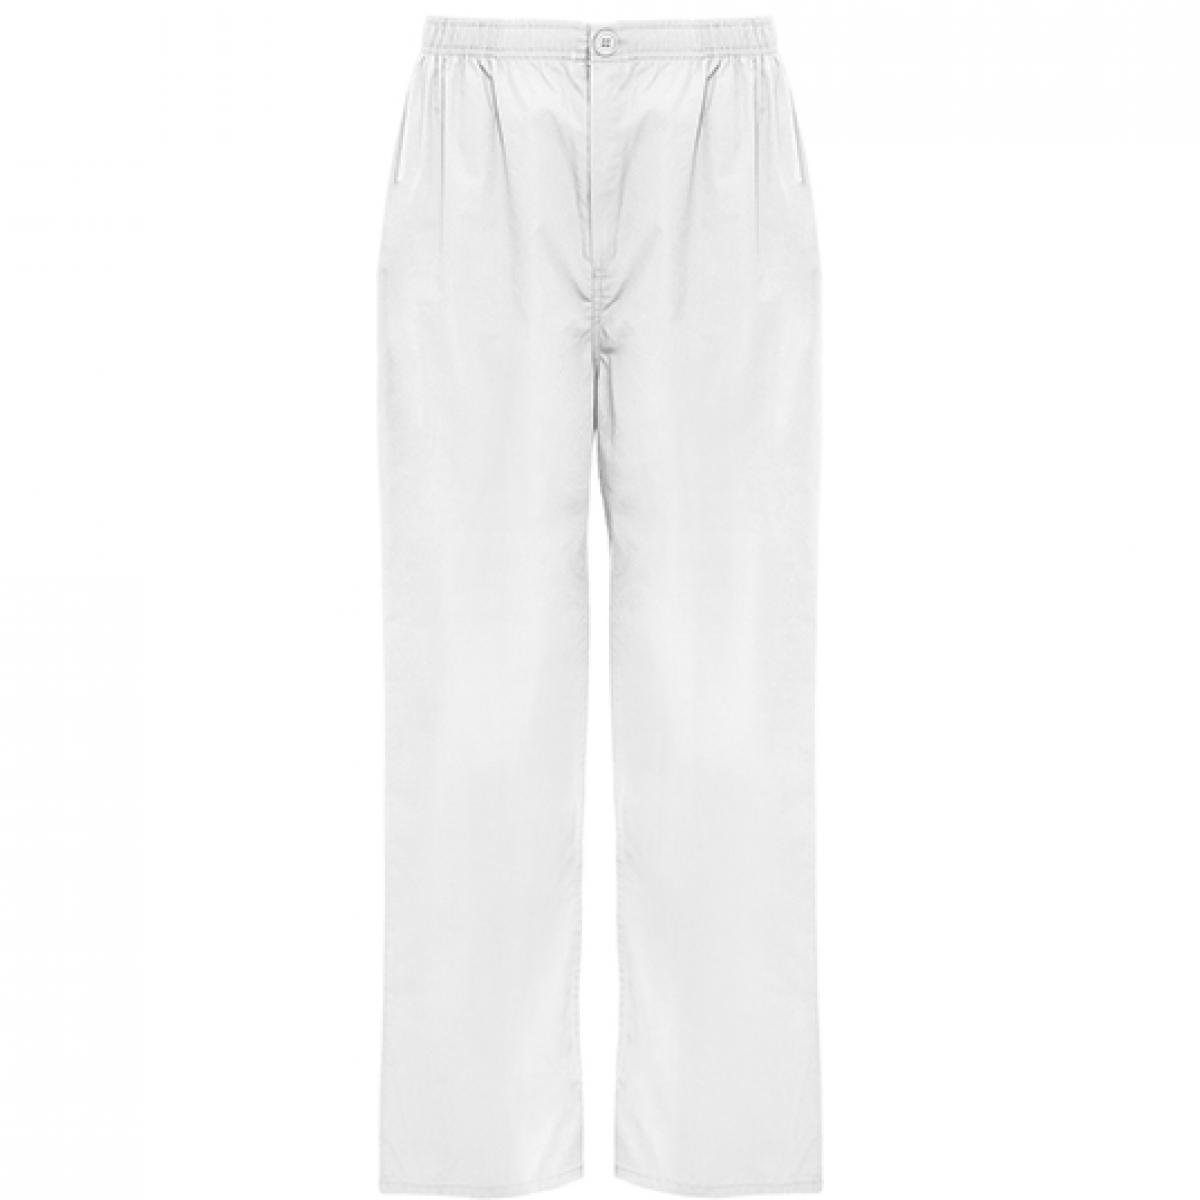 Hersteller: Roly Workwear Herstellernummer: PA9097 Artikelbezeichnung: Vademecum Pull on trousers - Pfegerhose Farbe: White 01